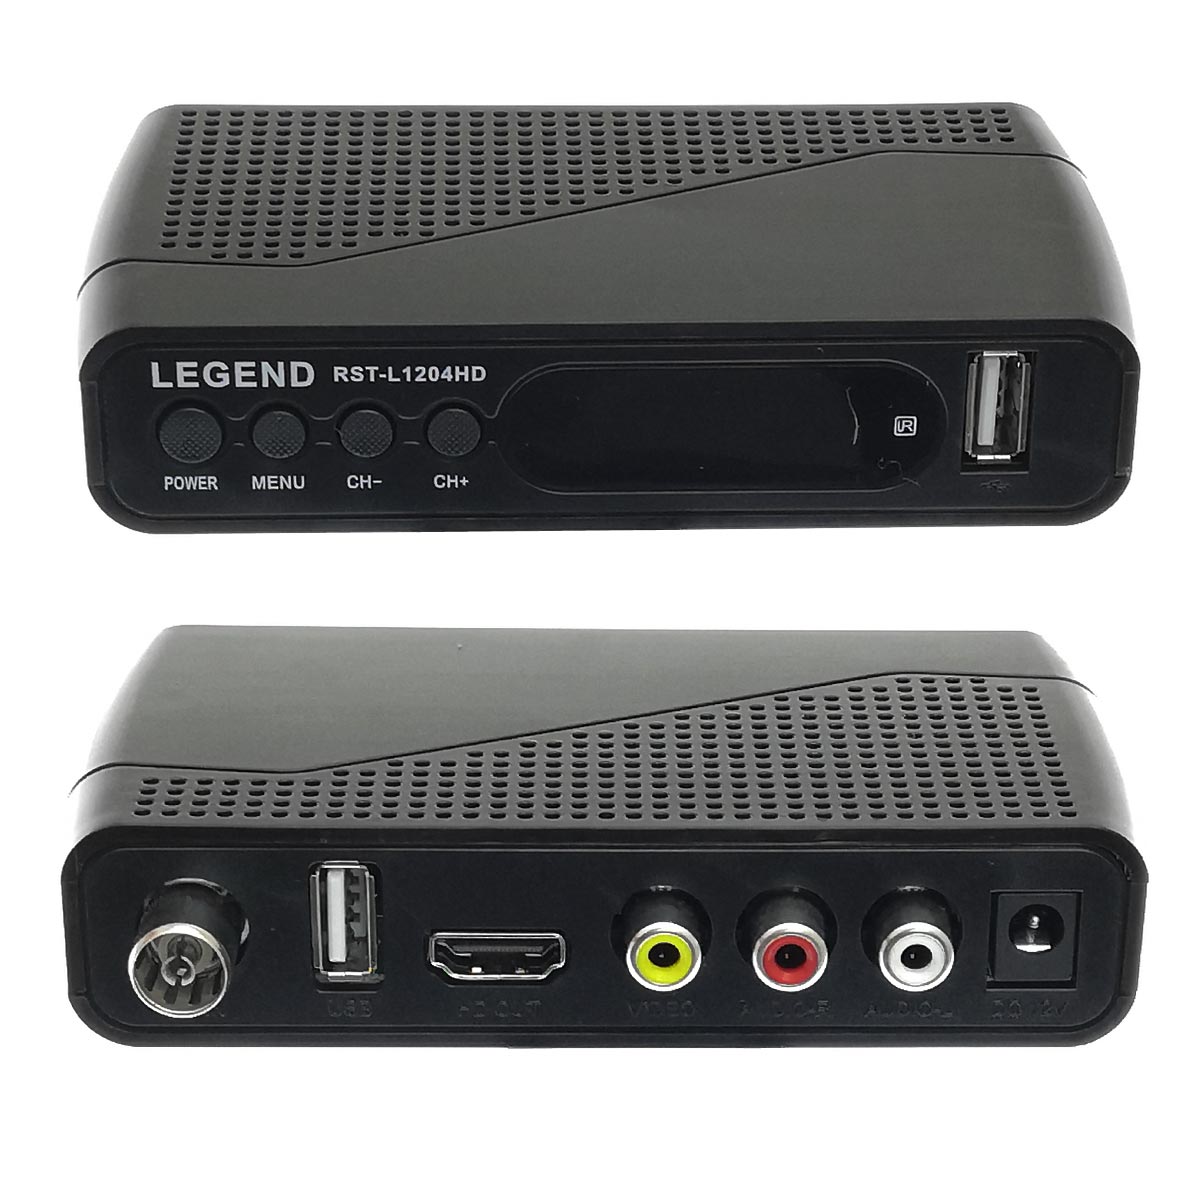 Цифровой эфирный приёмник, ТВ приставка DVB-T2 LEGEND RST-L1204HD, цвет черный